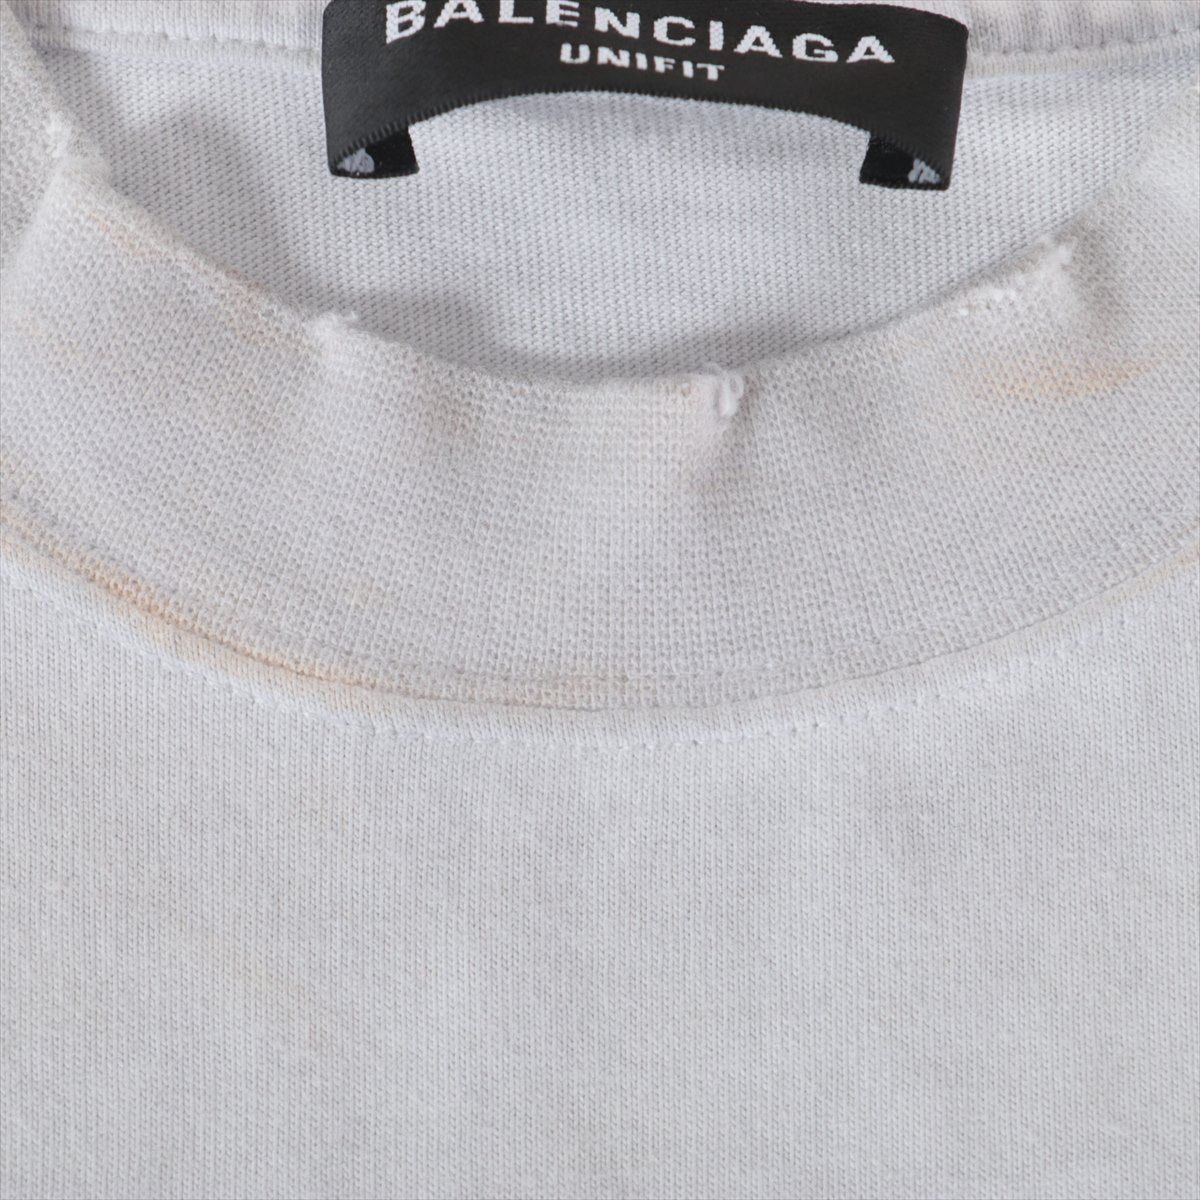 バレンシアガ 22AW コットン Tシャツ 1 メンズ グレー 694576 メタルロゴ クラッシュ加工 ペンキ加工 オーバーサイズ